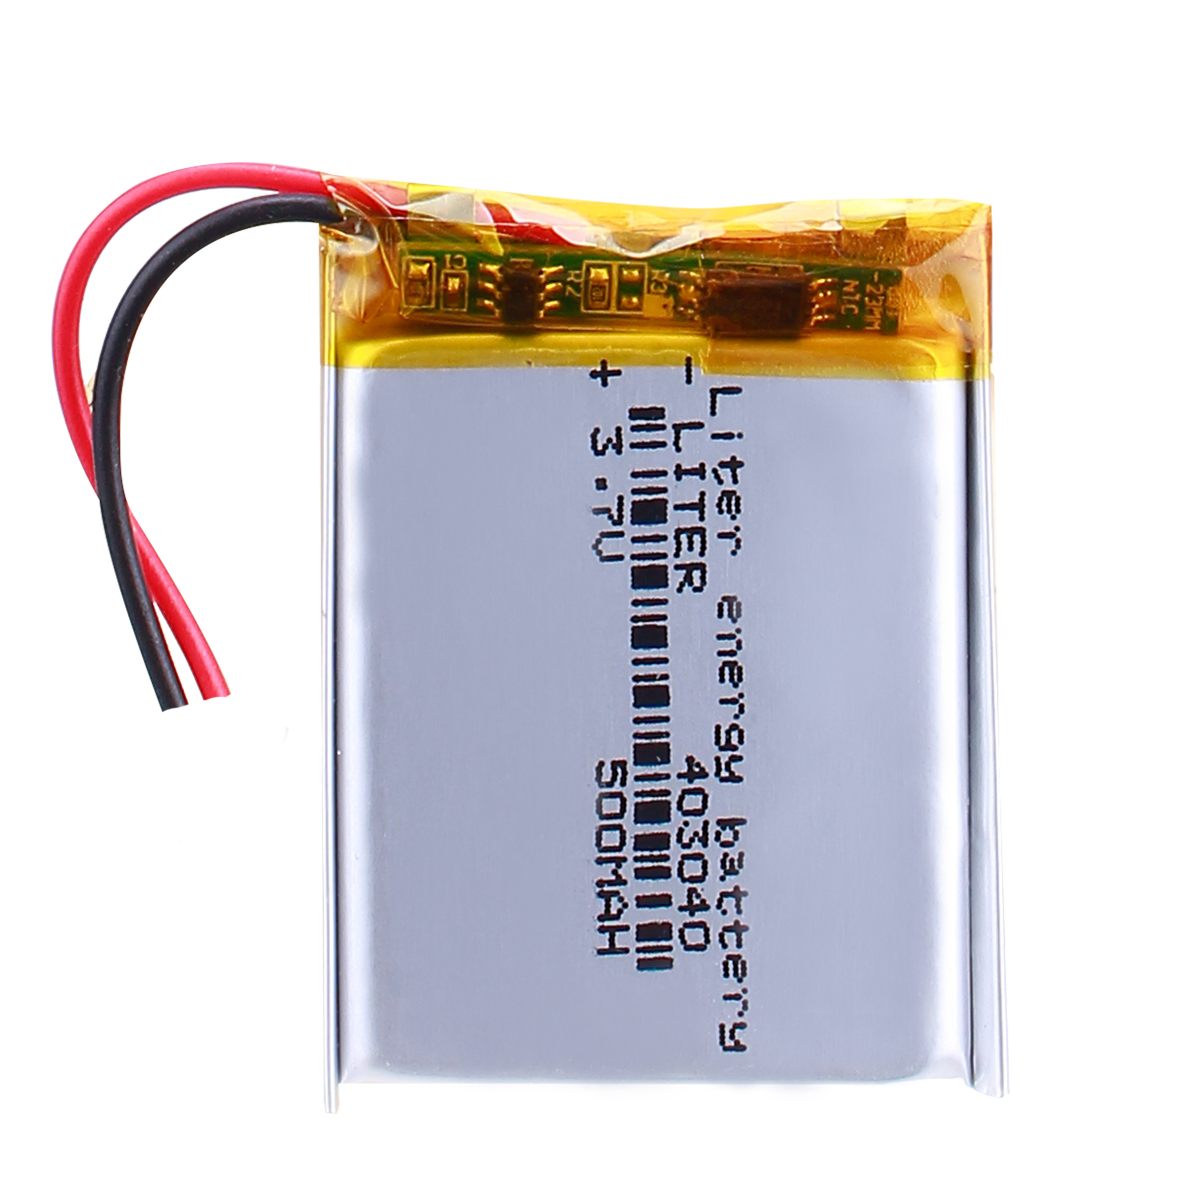 403040 500mAh 3.7V Rechargeable LiPo Battery